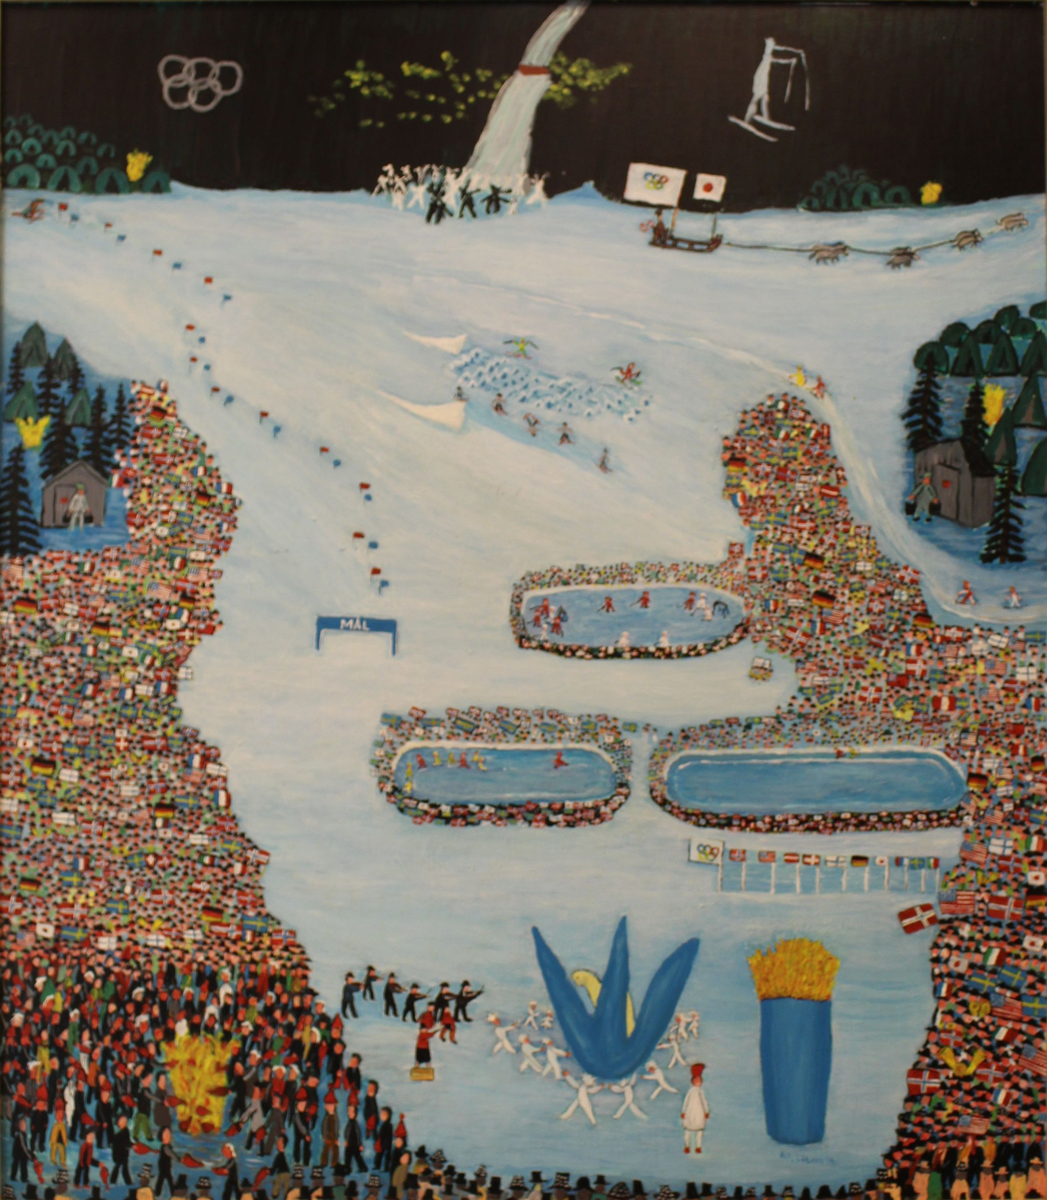 Motivet er hentet fra åpningsseremonien til OL på Lillehammer i 1994. Store menneskemengder står rundt en vinterlig arena med OL-ringene og en hoppbakke i bakgrunnen. 